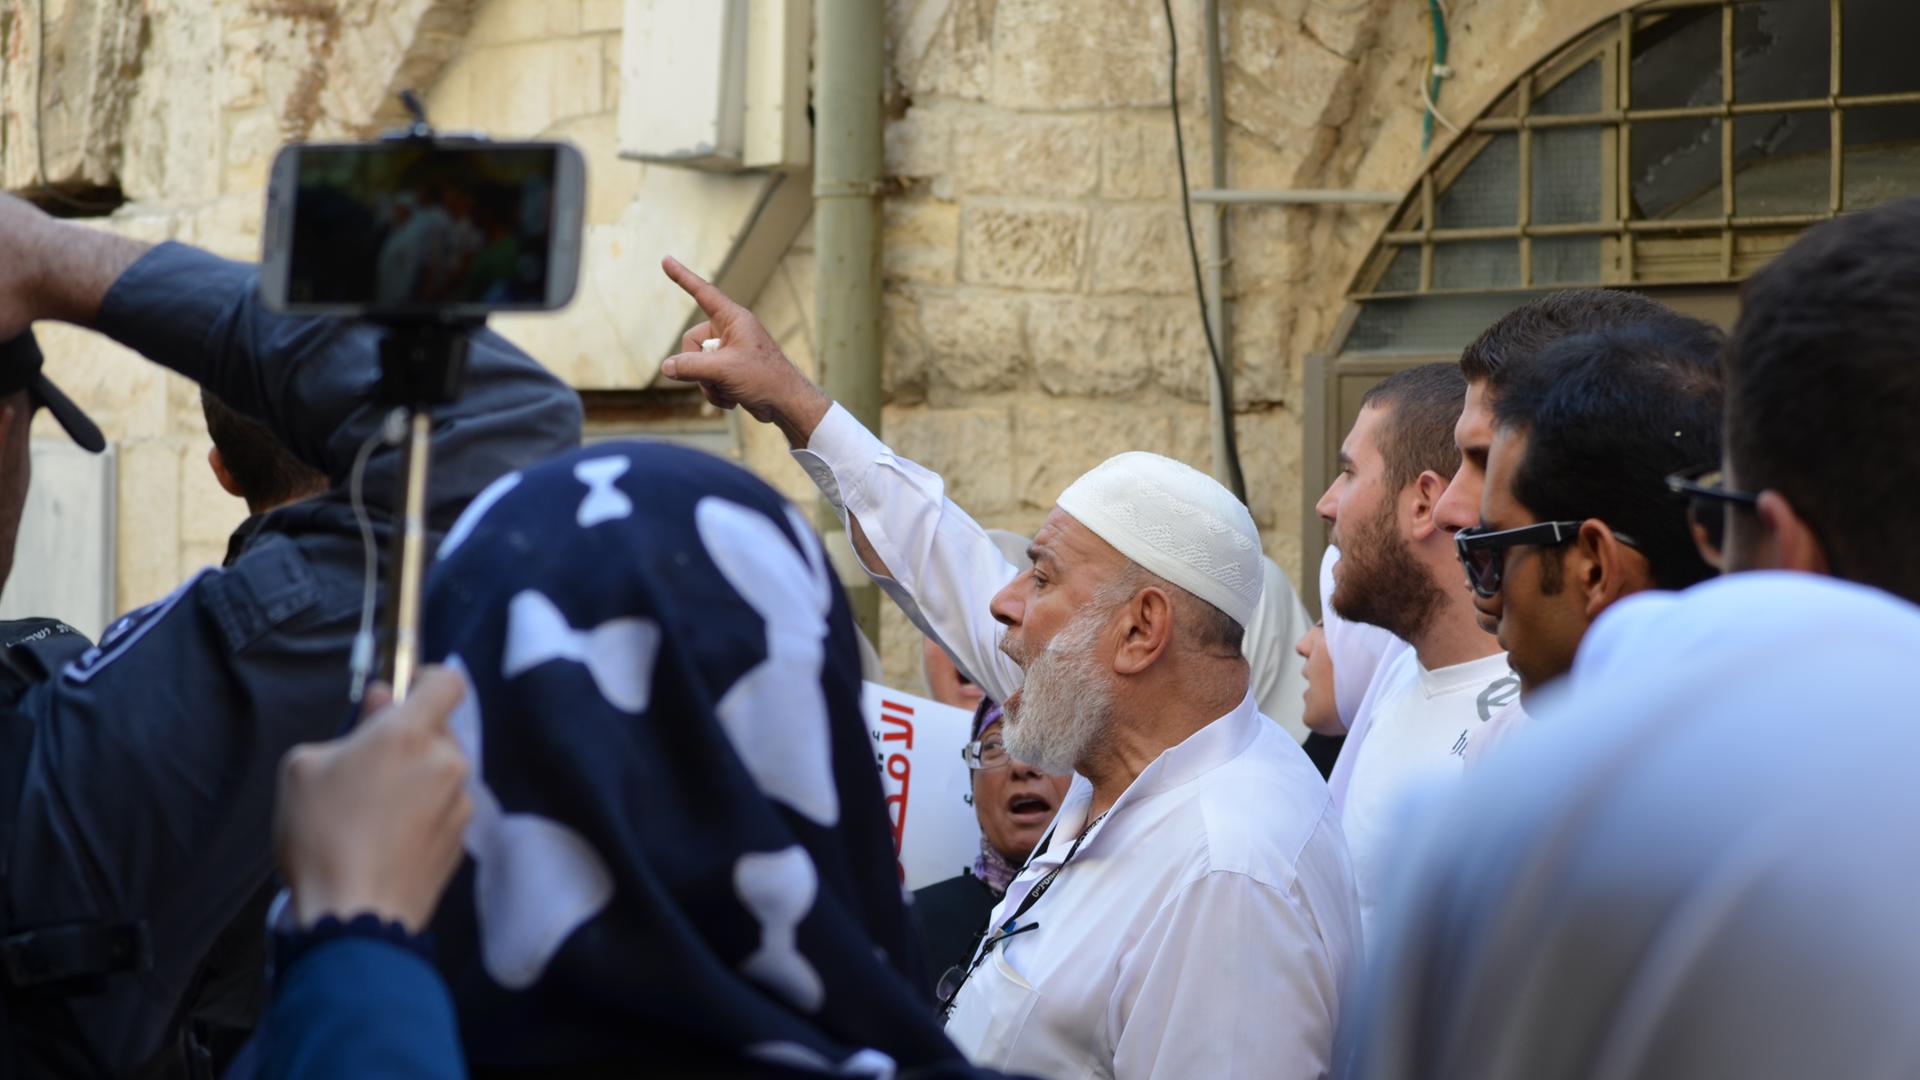 Muslimische Männer, teils mit erhobener Faust vor einer sandfarbenen Wand in Jerusalem während einer Demonstration. Eine Person filmt die Gruppe mit einem Smartphone.